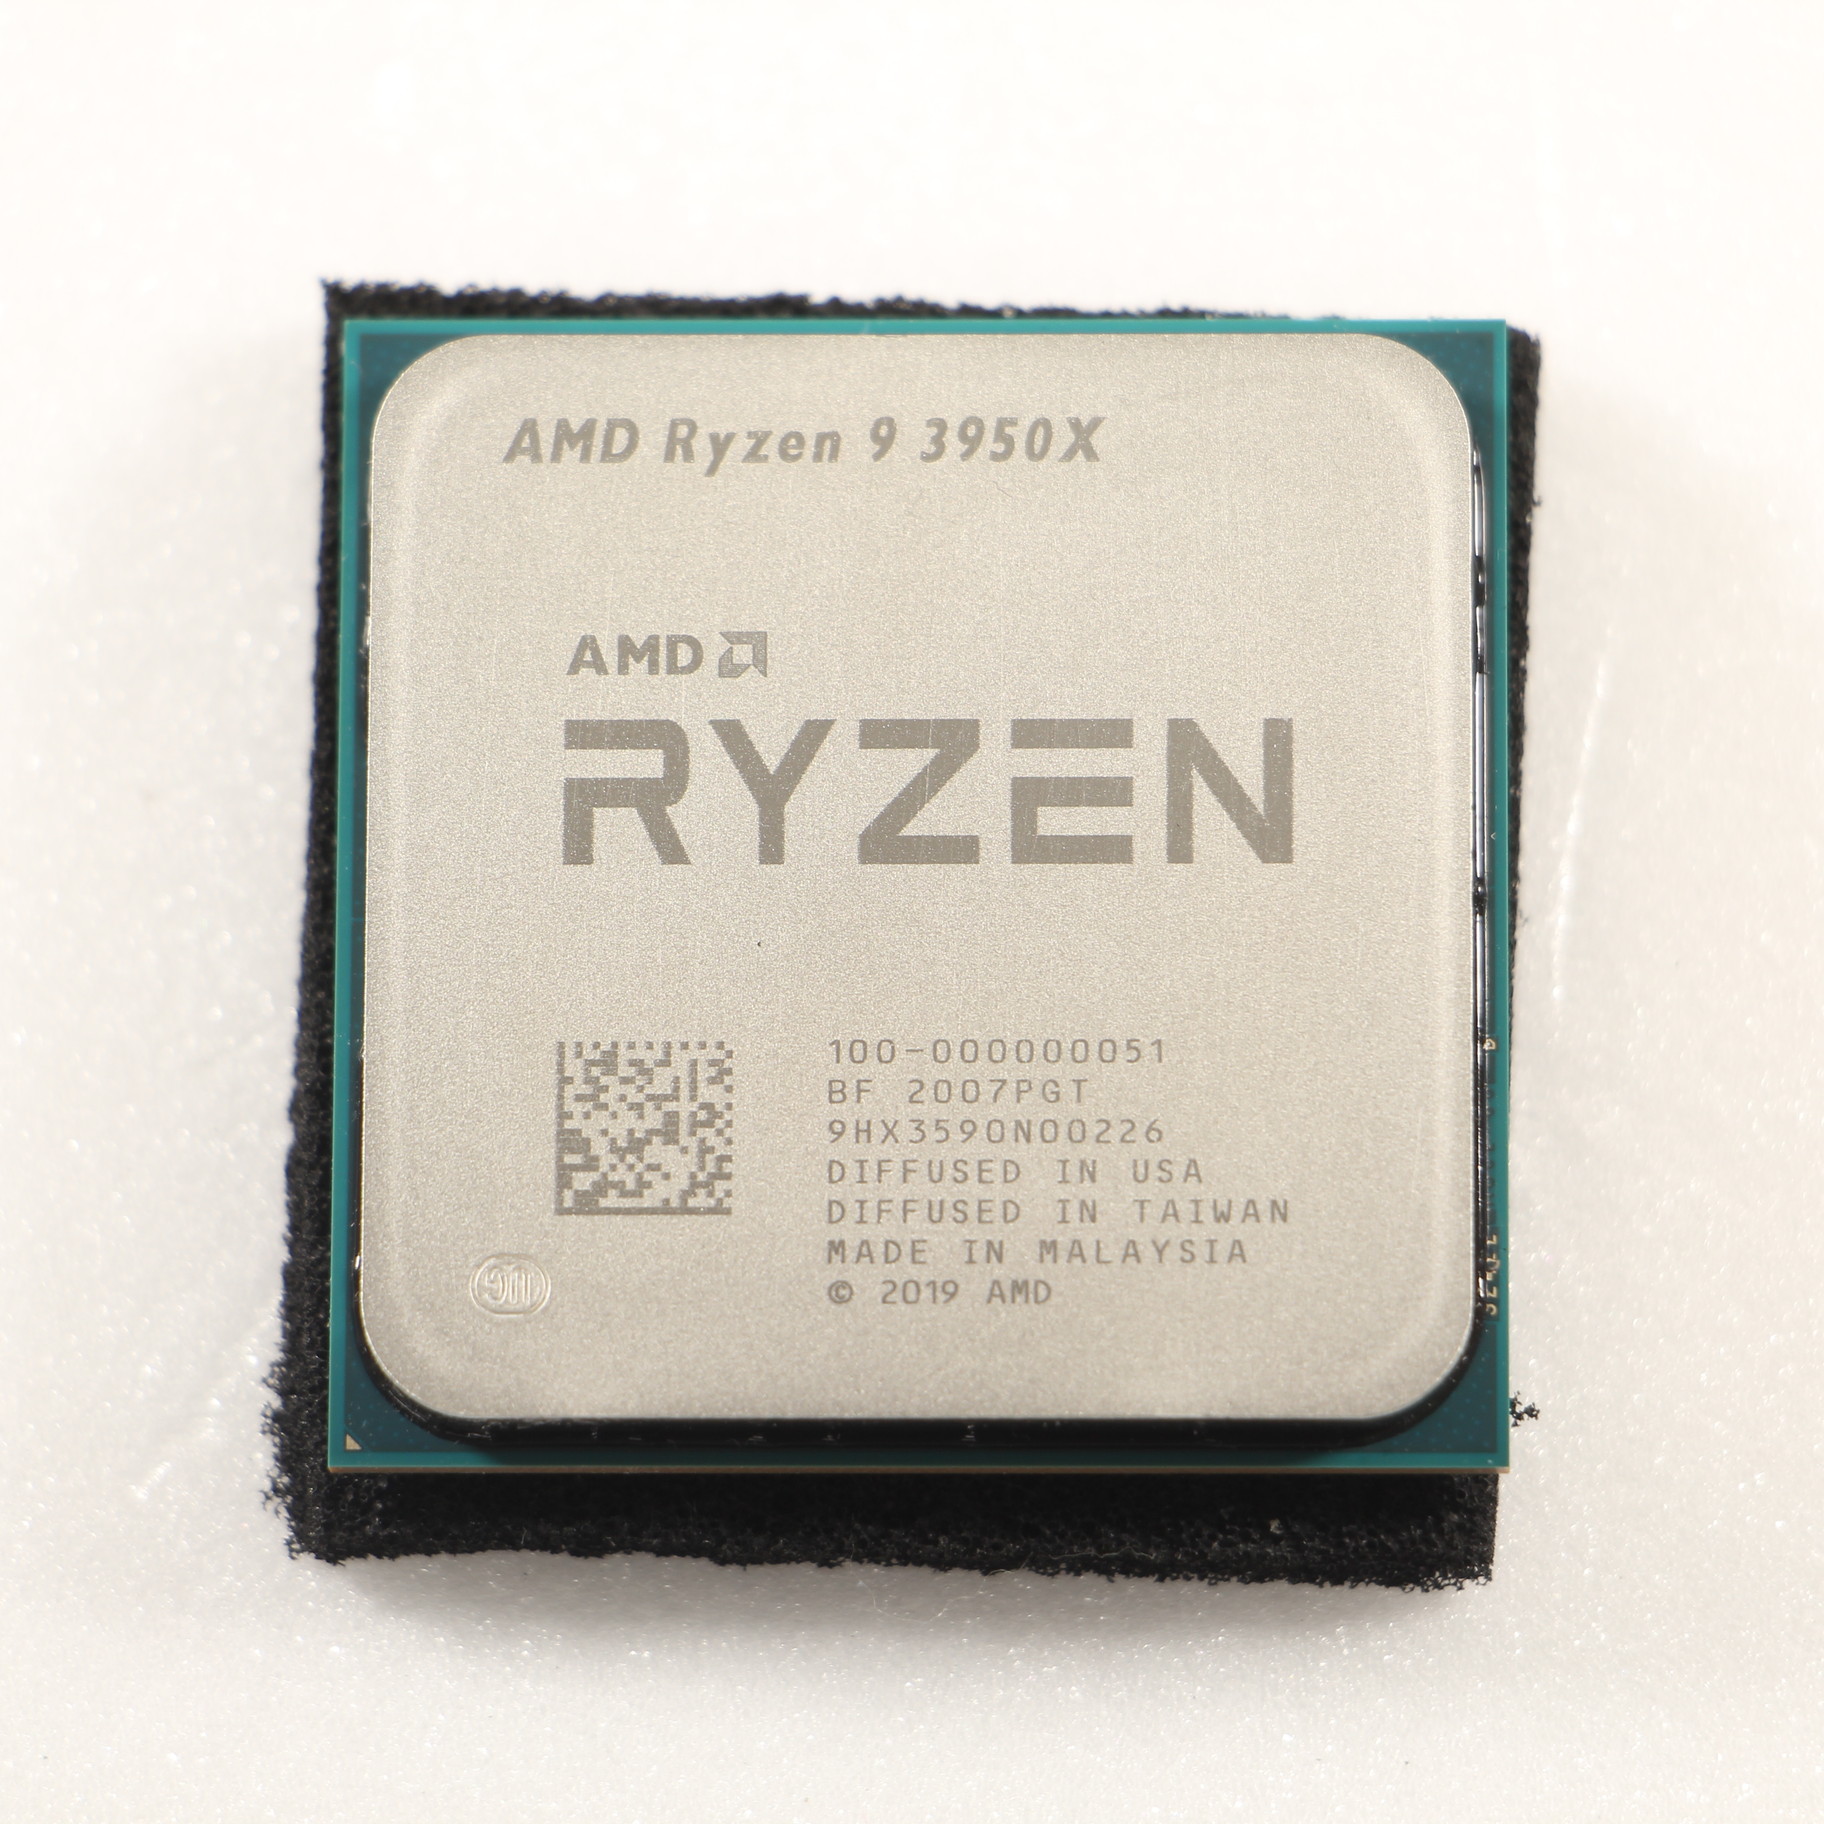 専用、AMD Ryzen 9 3950X 【新品未使用】